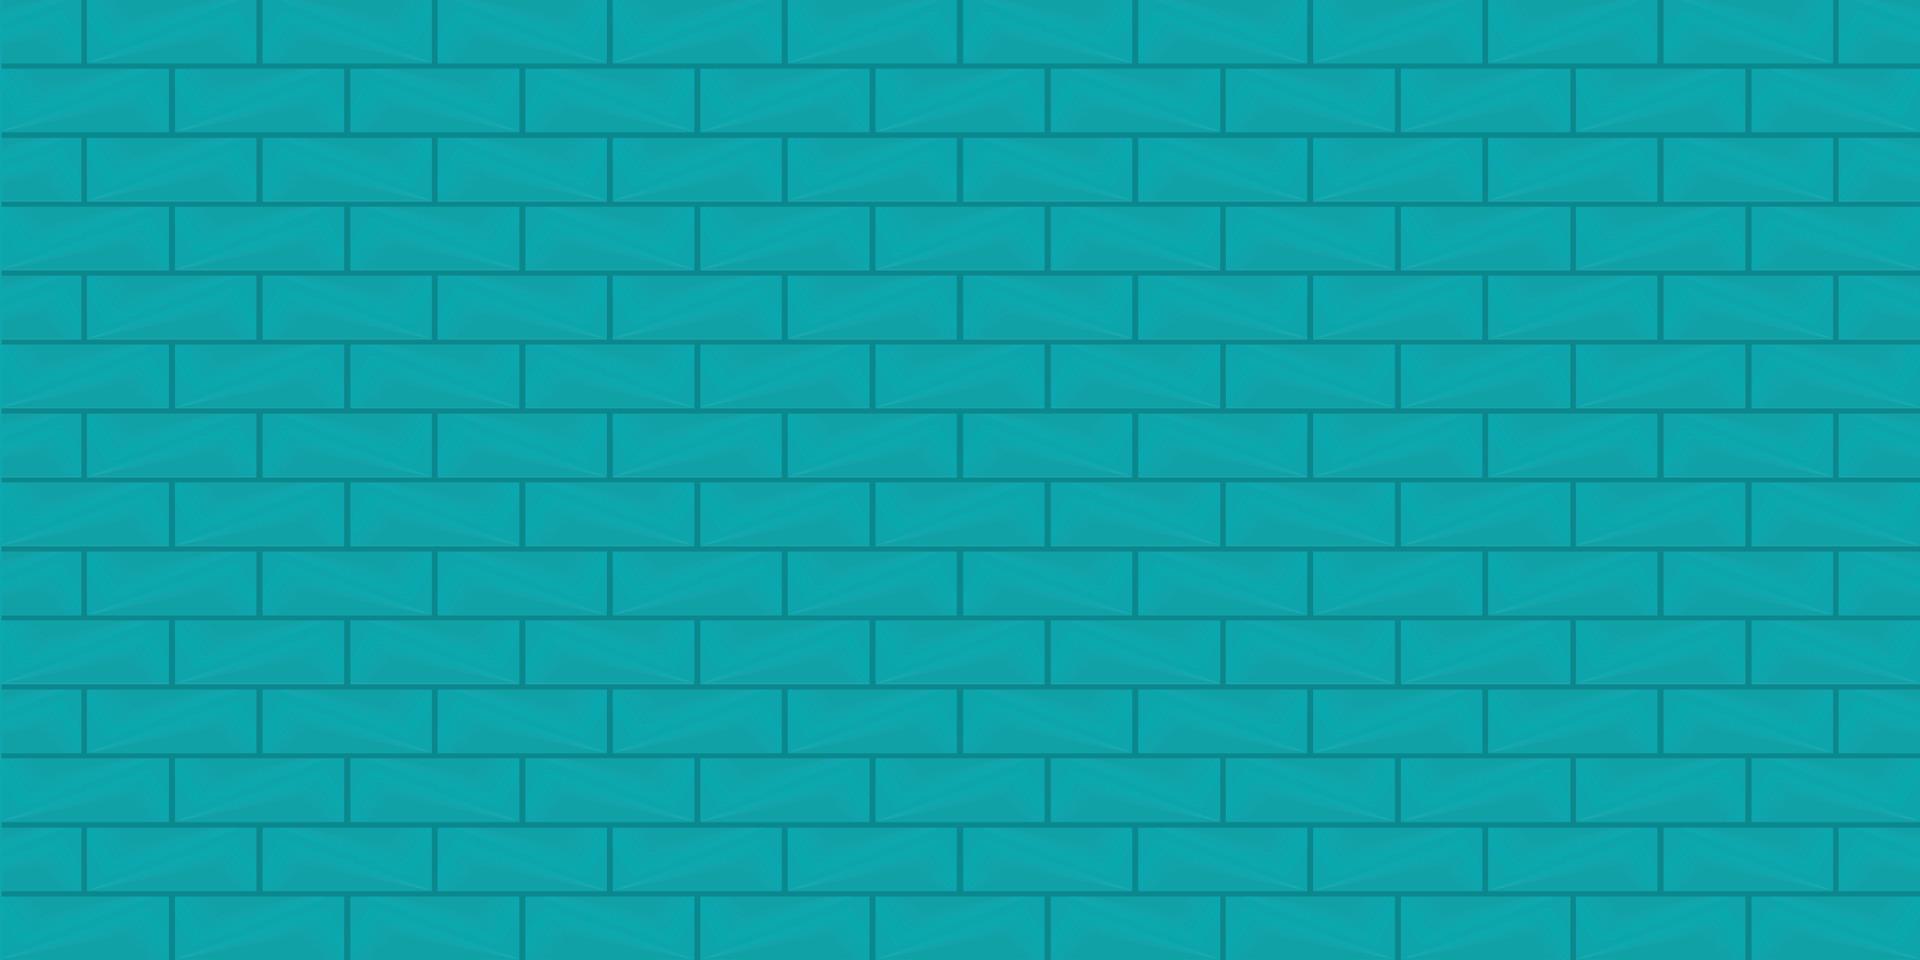 fundos abstratos parede de tijolos texturizados azul papel de parede colorido modelo de pano de fundo têxtil padrão ilustração vetorial vetor